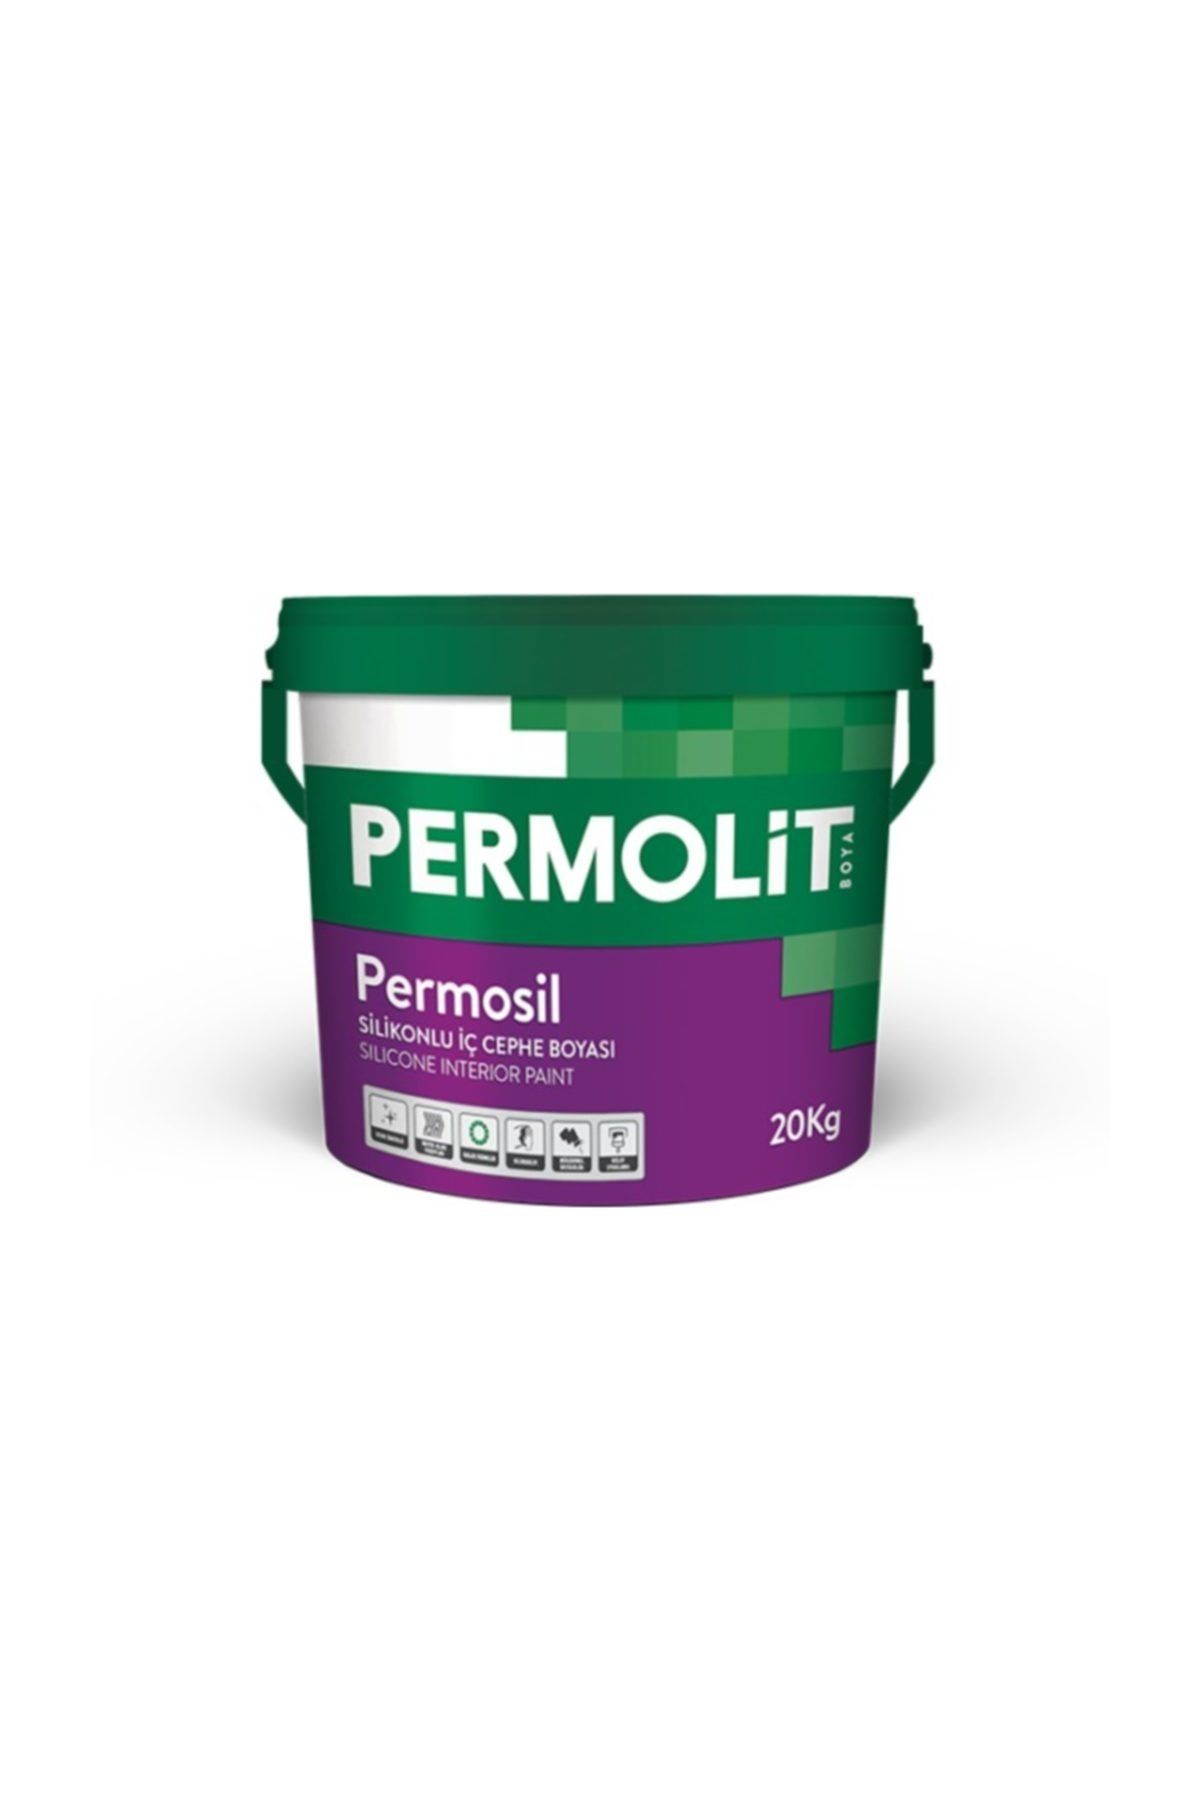 Permolit Permosil Silikonlu Iç Cephe Boyası 20 kg  2216 Çakıl Taşı